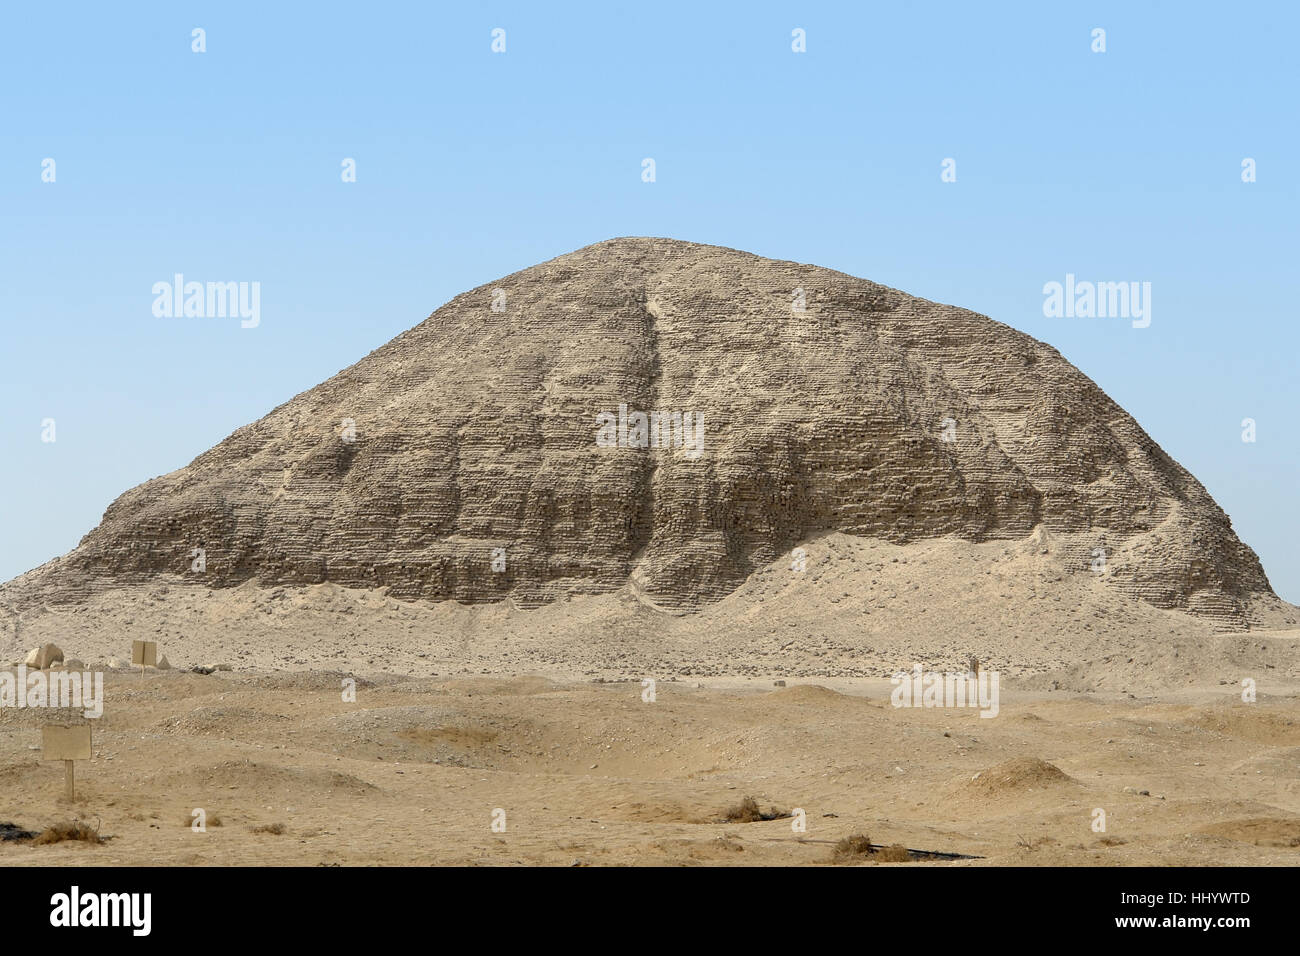 historische-stein-wuste-odland-standort-schuss-pyramide-ruine-agypten-trocken-hhywtd.jpg